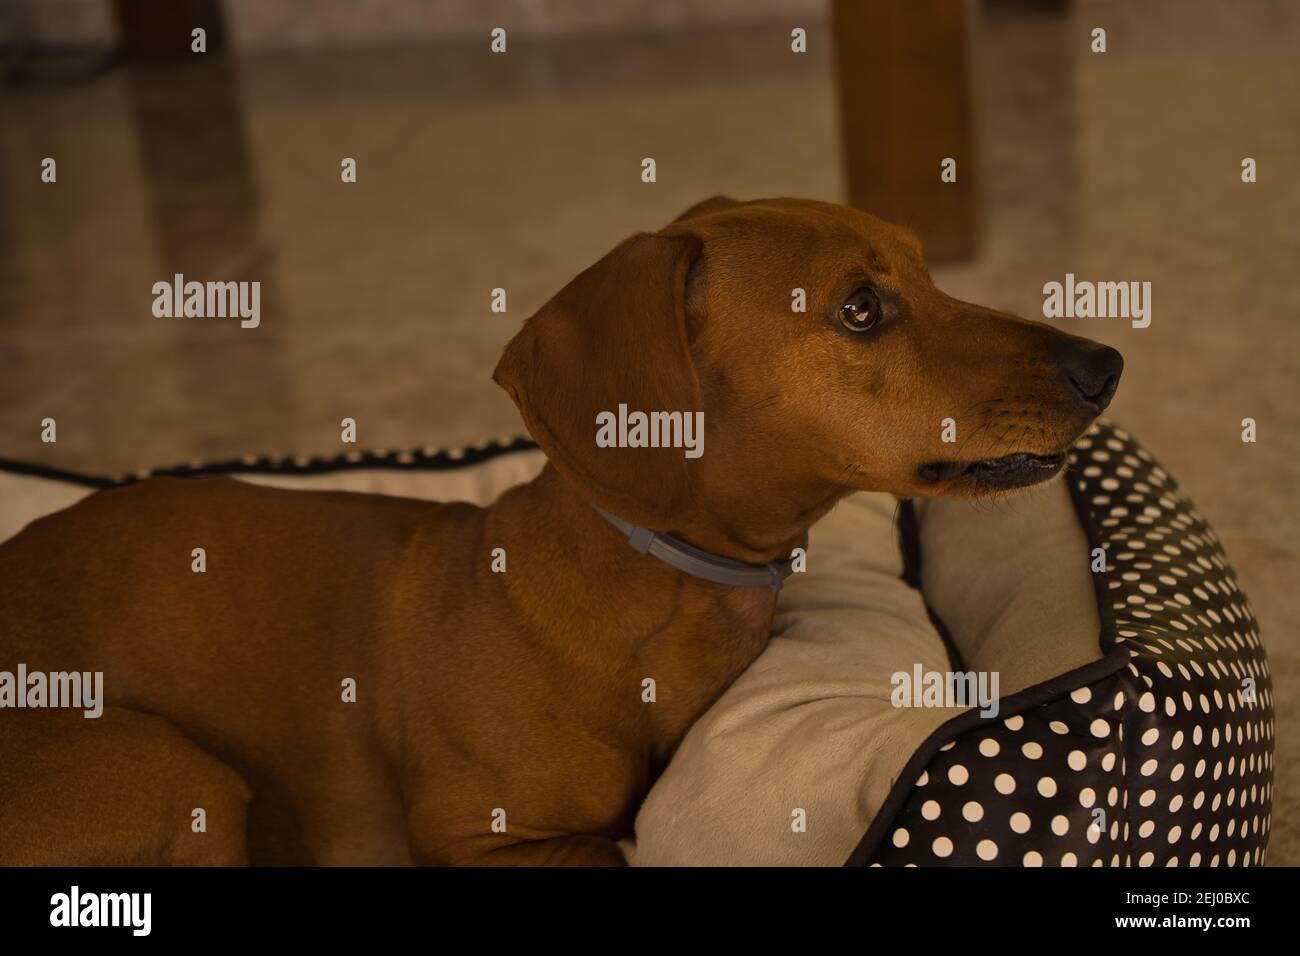 Bellissimo cane dachshund purebred, chiamato anche dachshund, cane viennese o cane salsiccia, su un letto di cane guardando la macchina fotografica. Cane Foto Stock